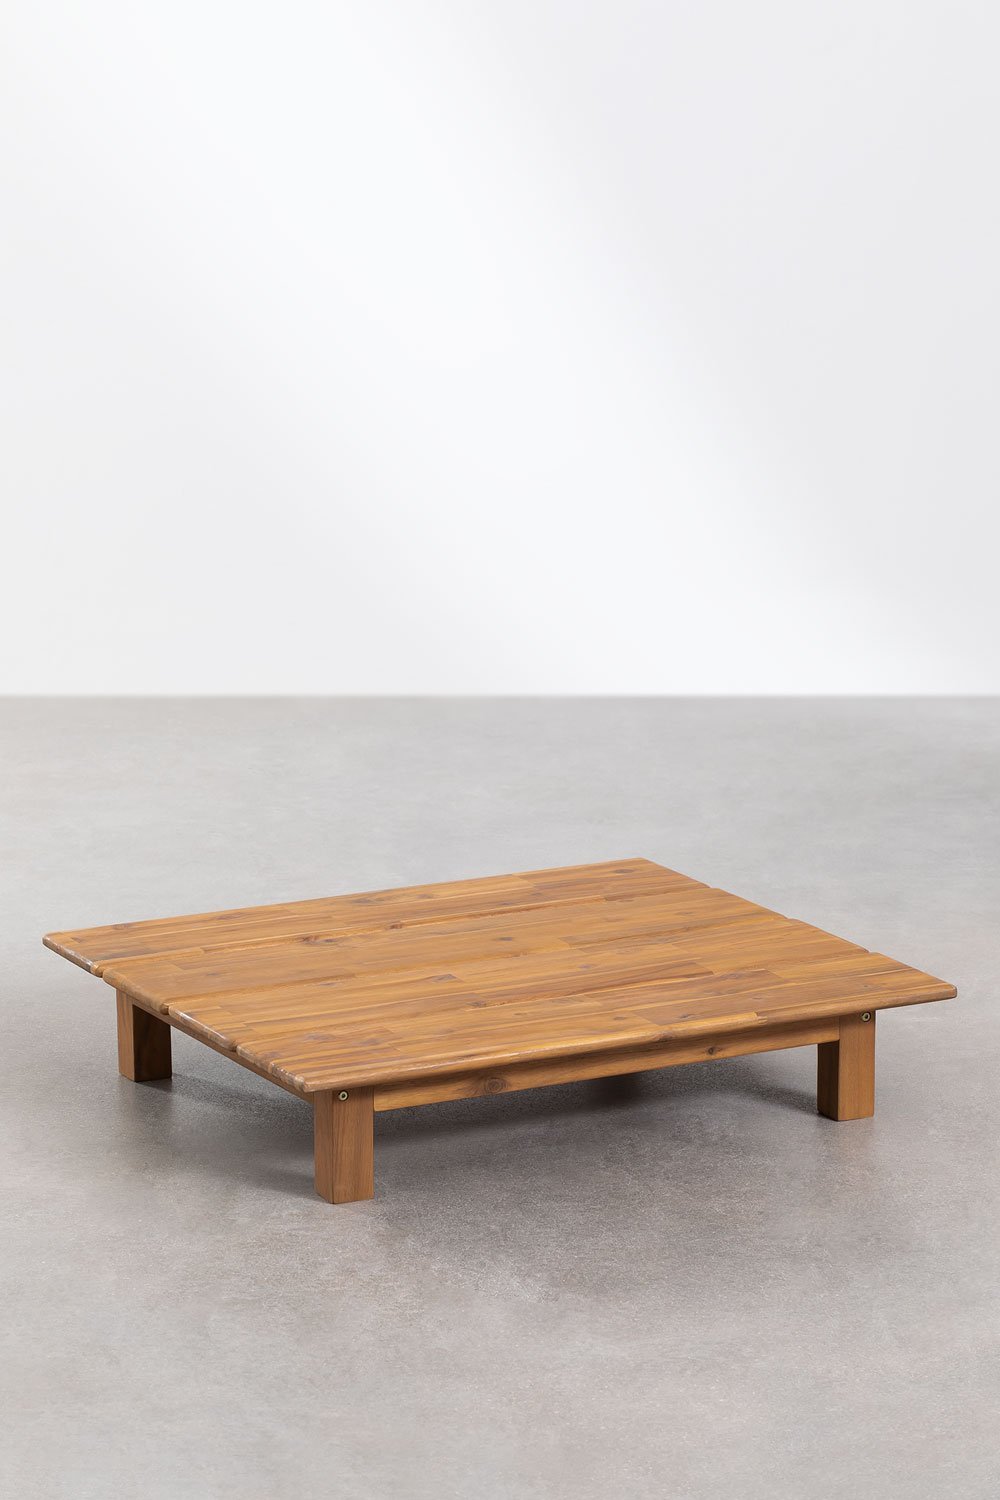 Tavolino Rettangolare in Legno di Acacia (85x75 cm) Brina, immagine della galleria 1